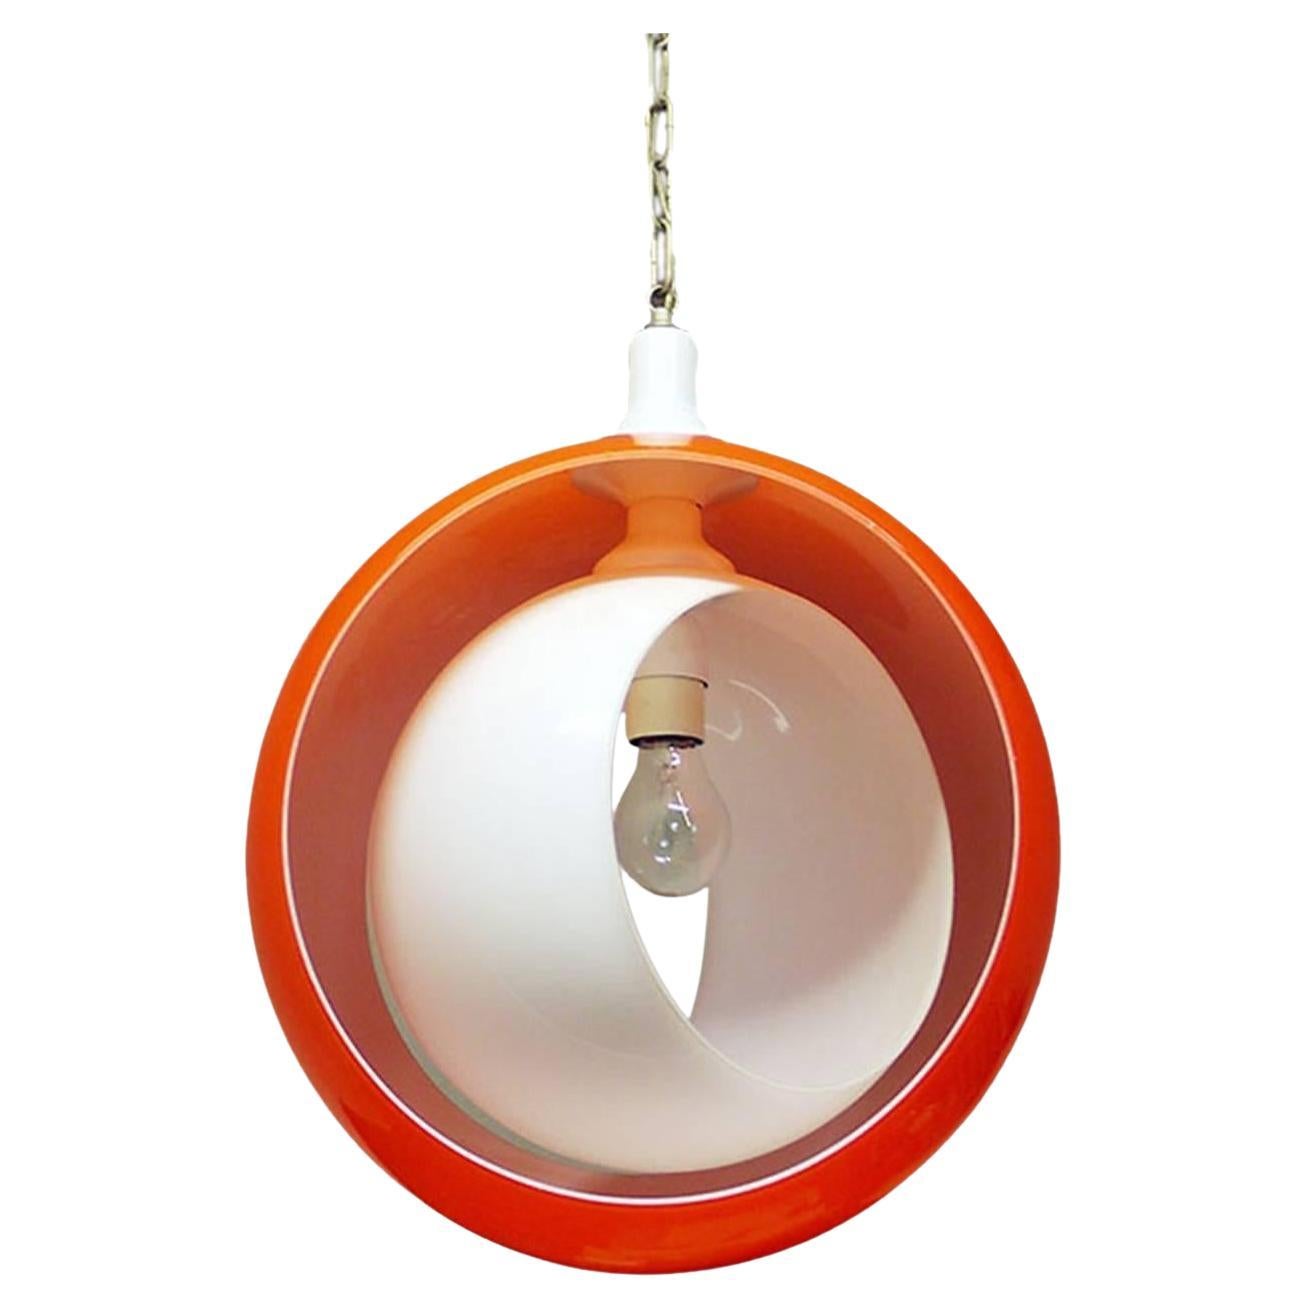 Mondförmige Muranoglas-Hängeleuchte Orange & Weiß von Carlo Nason für Mazzega 1960er Jahre